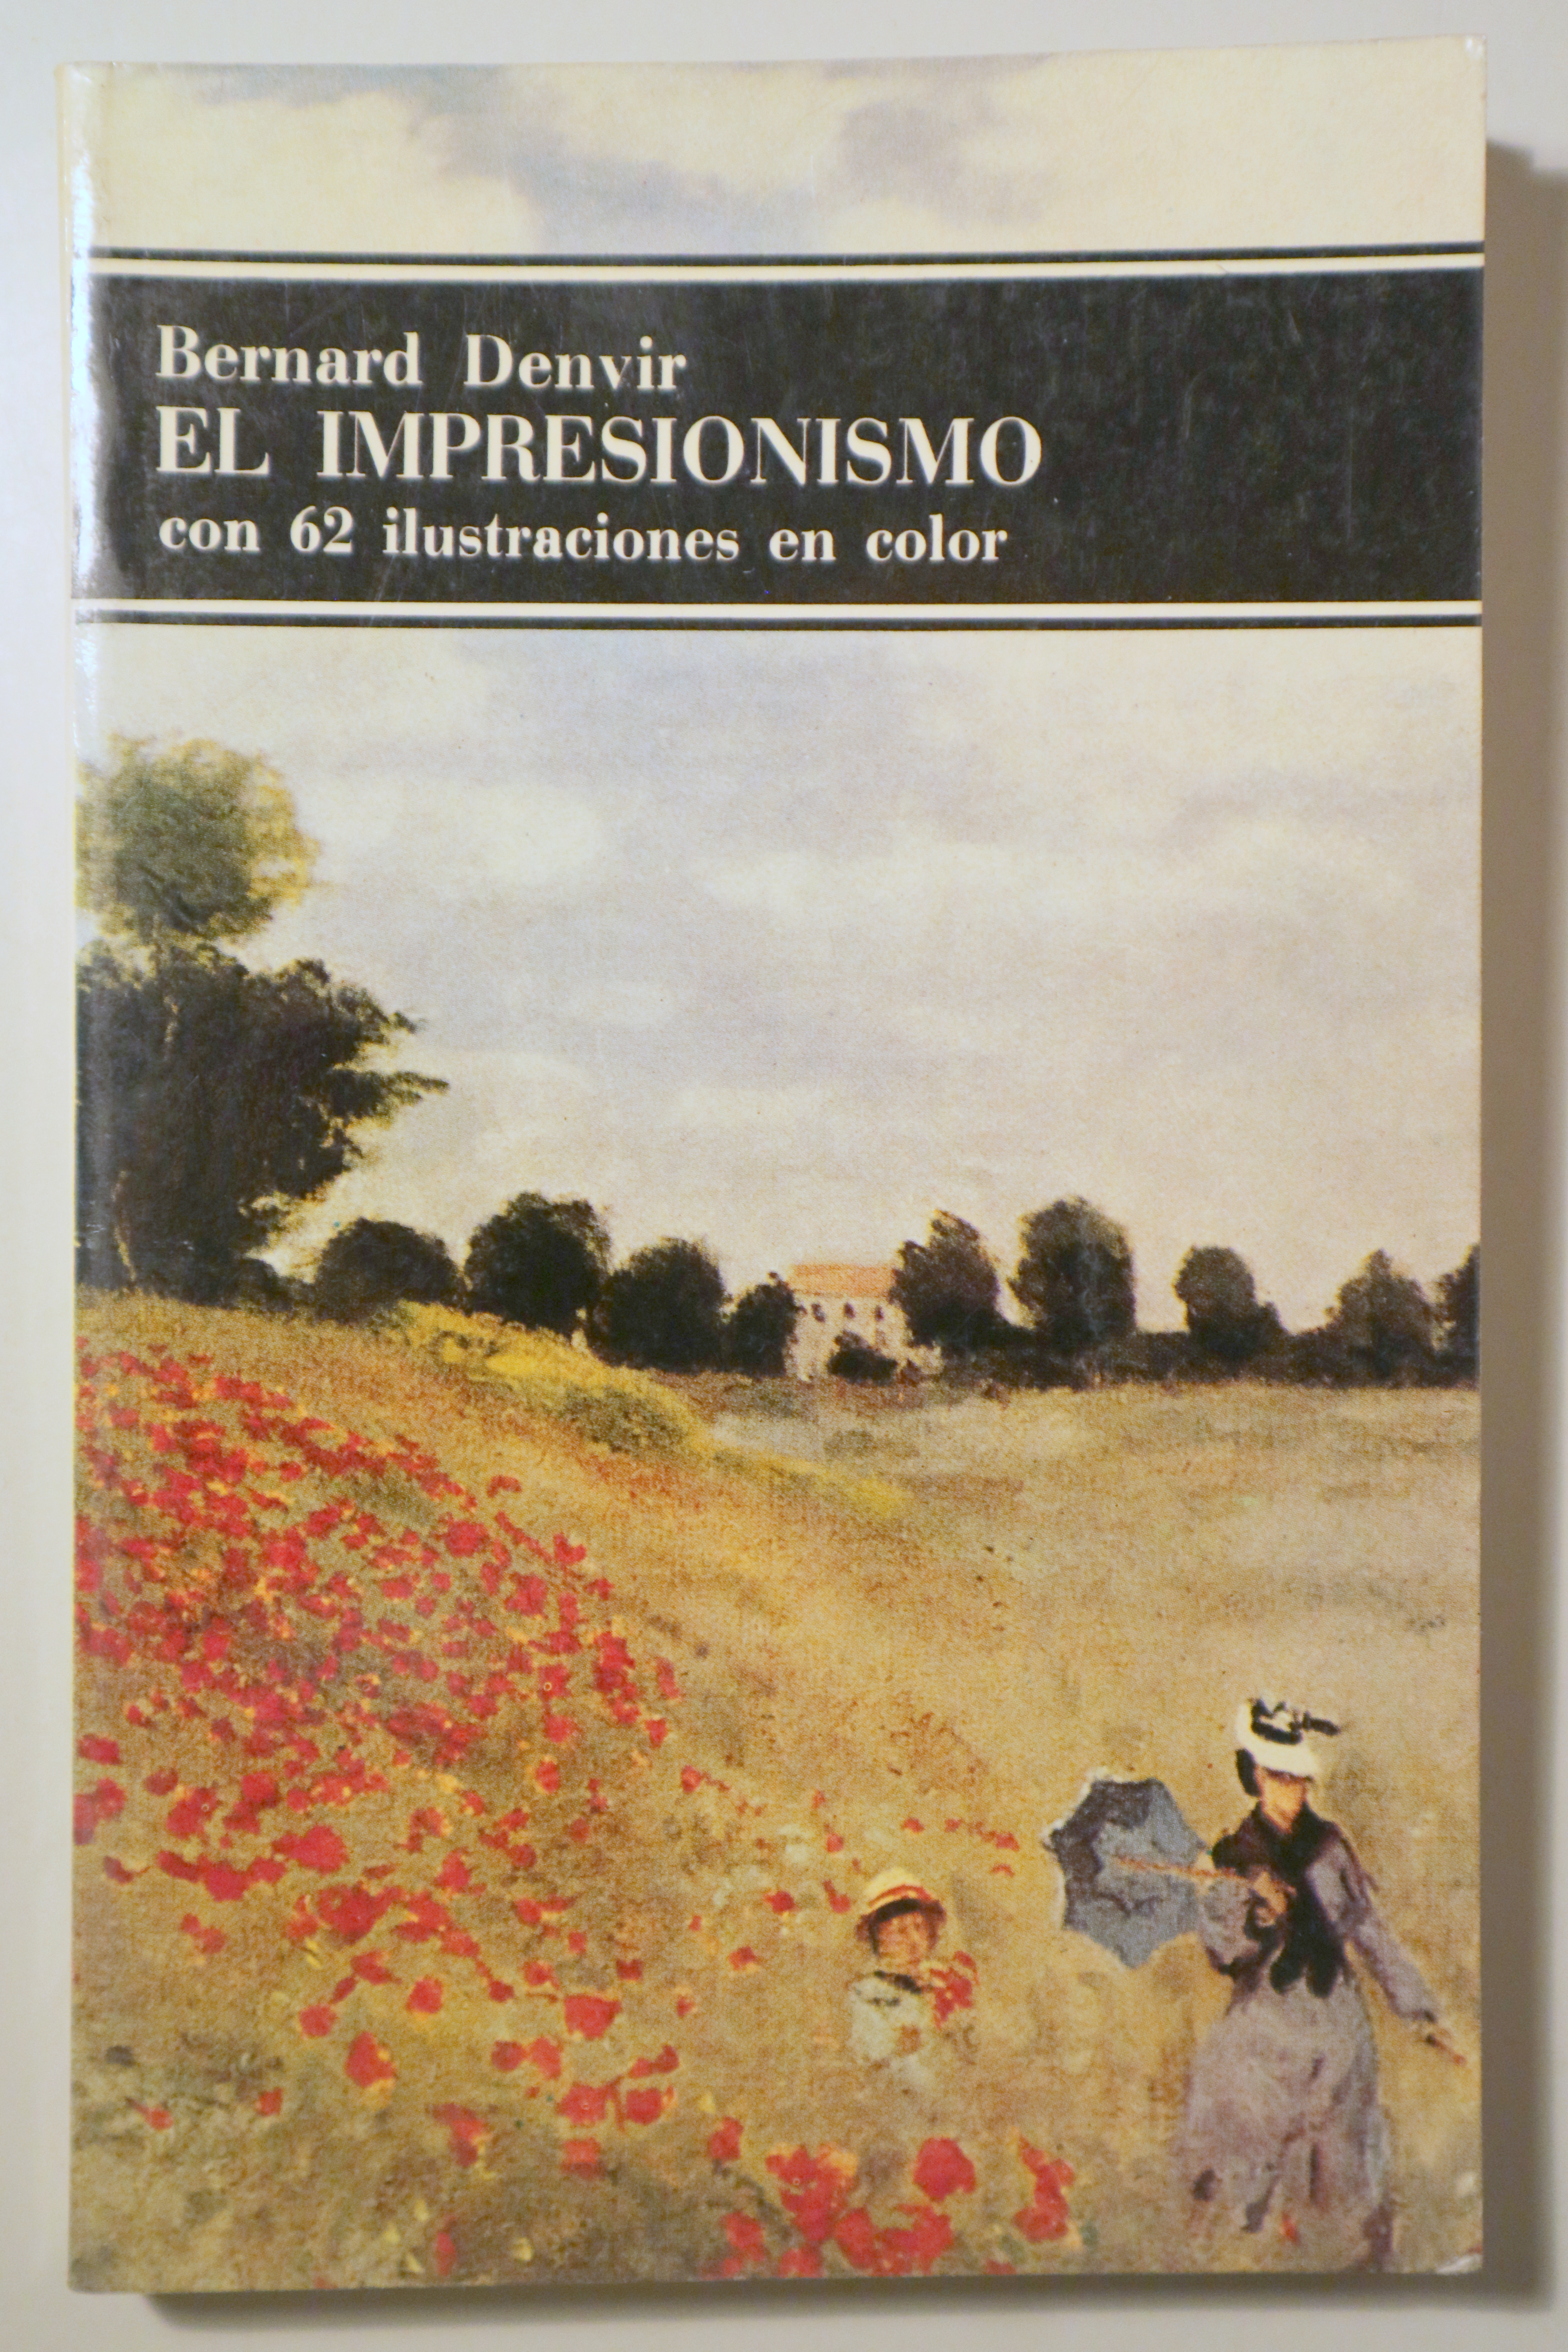 EL IMPRESIONISMO - Barcelona 1975 - Muy ilustrado